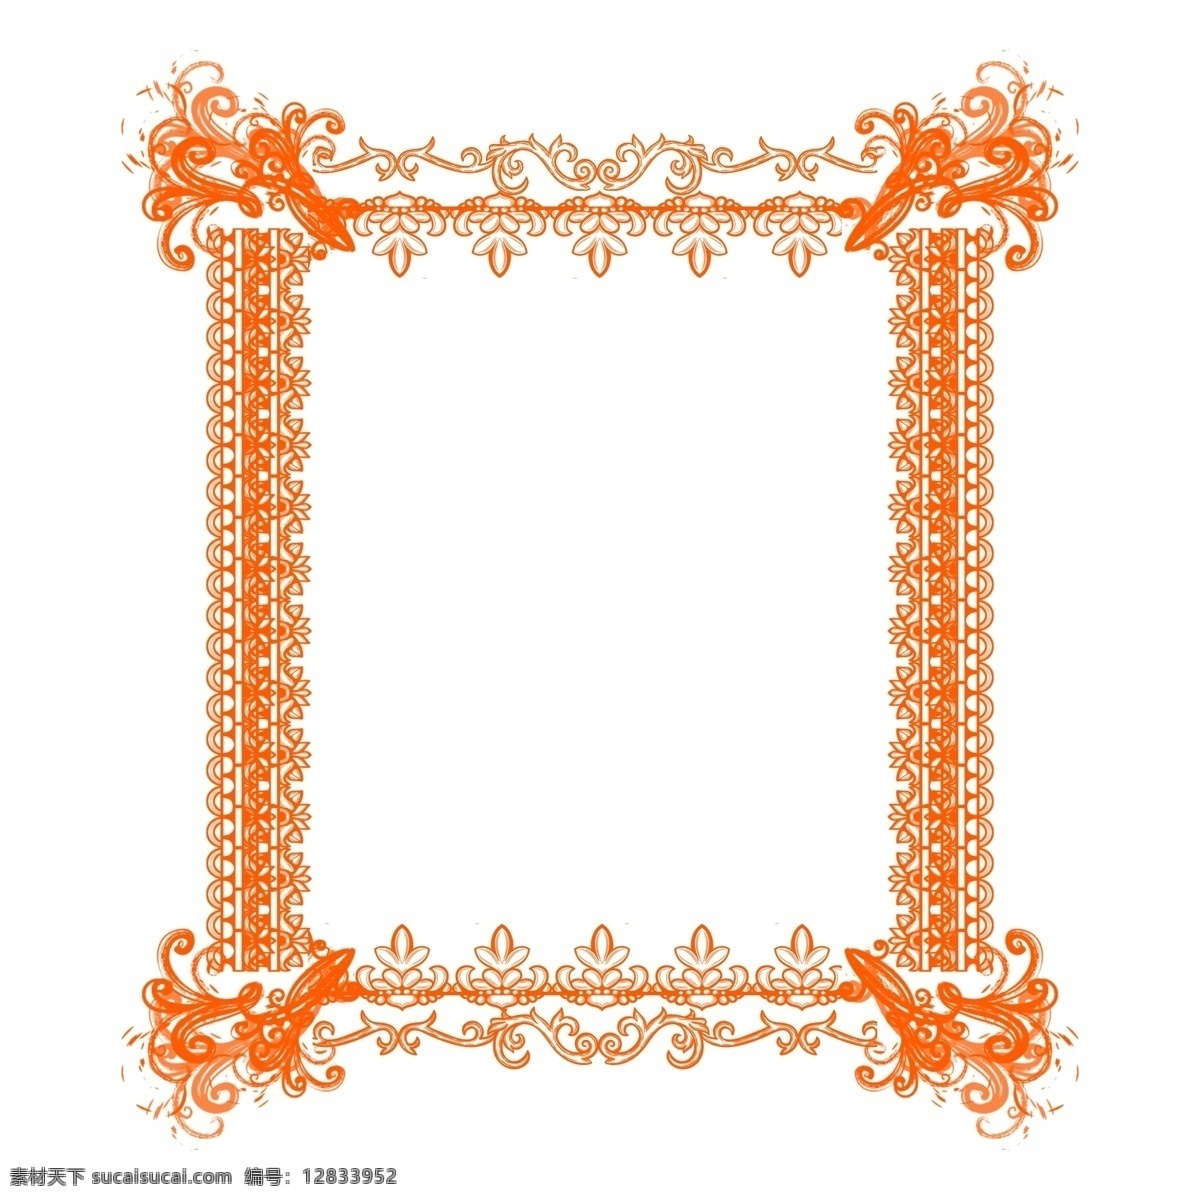 原创 欧式 复杂 边框 套 图 橙色 商用 元素 红色 欧式边框 线条 纹理